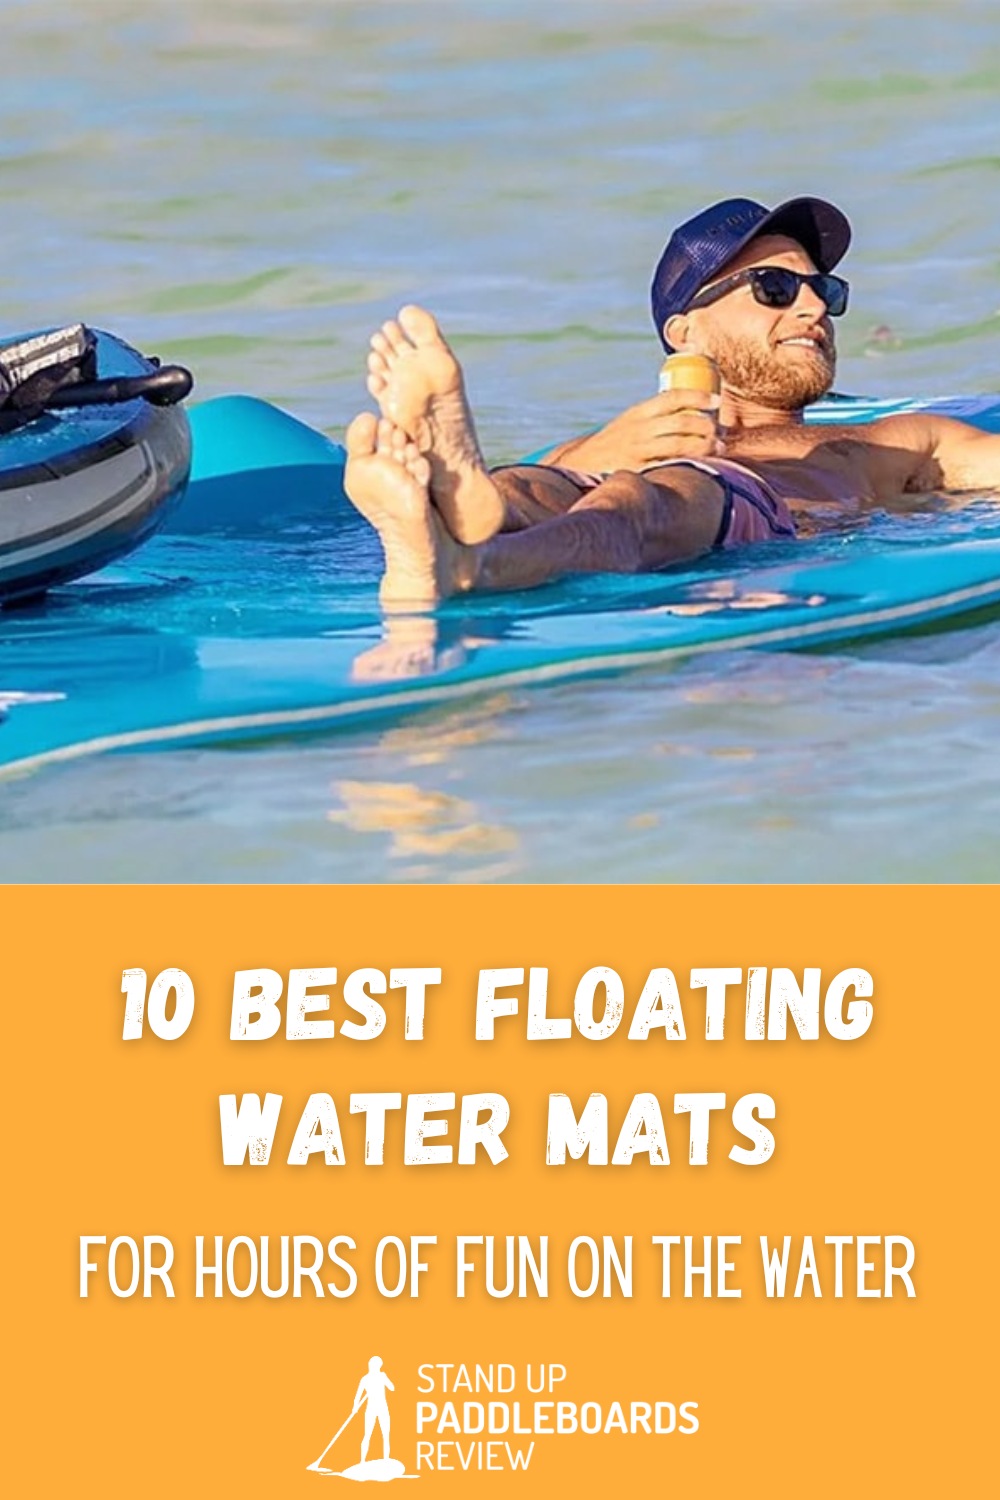 https://supscout.b-cdn.net/wp-content/uploads/10-Best-Floating-Water-Mats.jpg